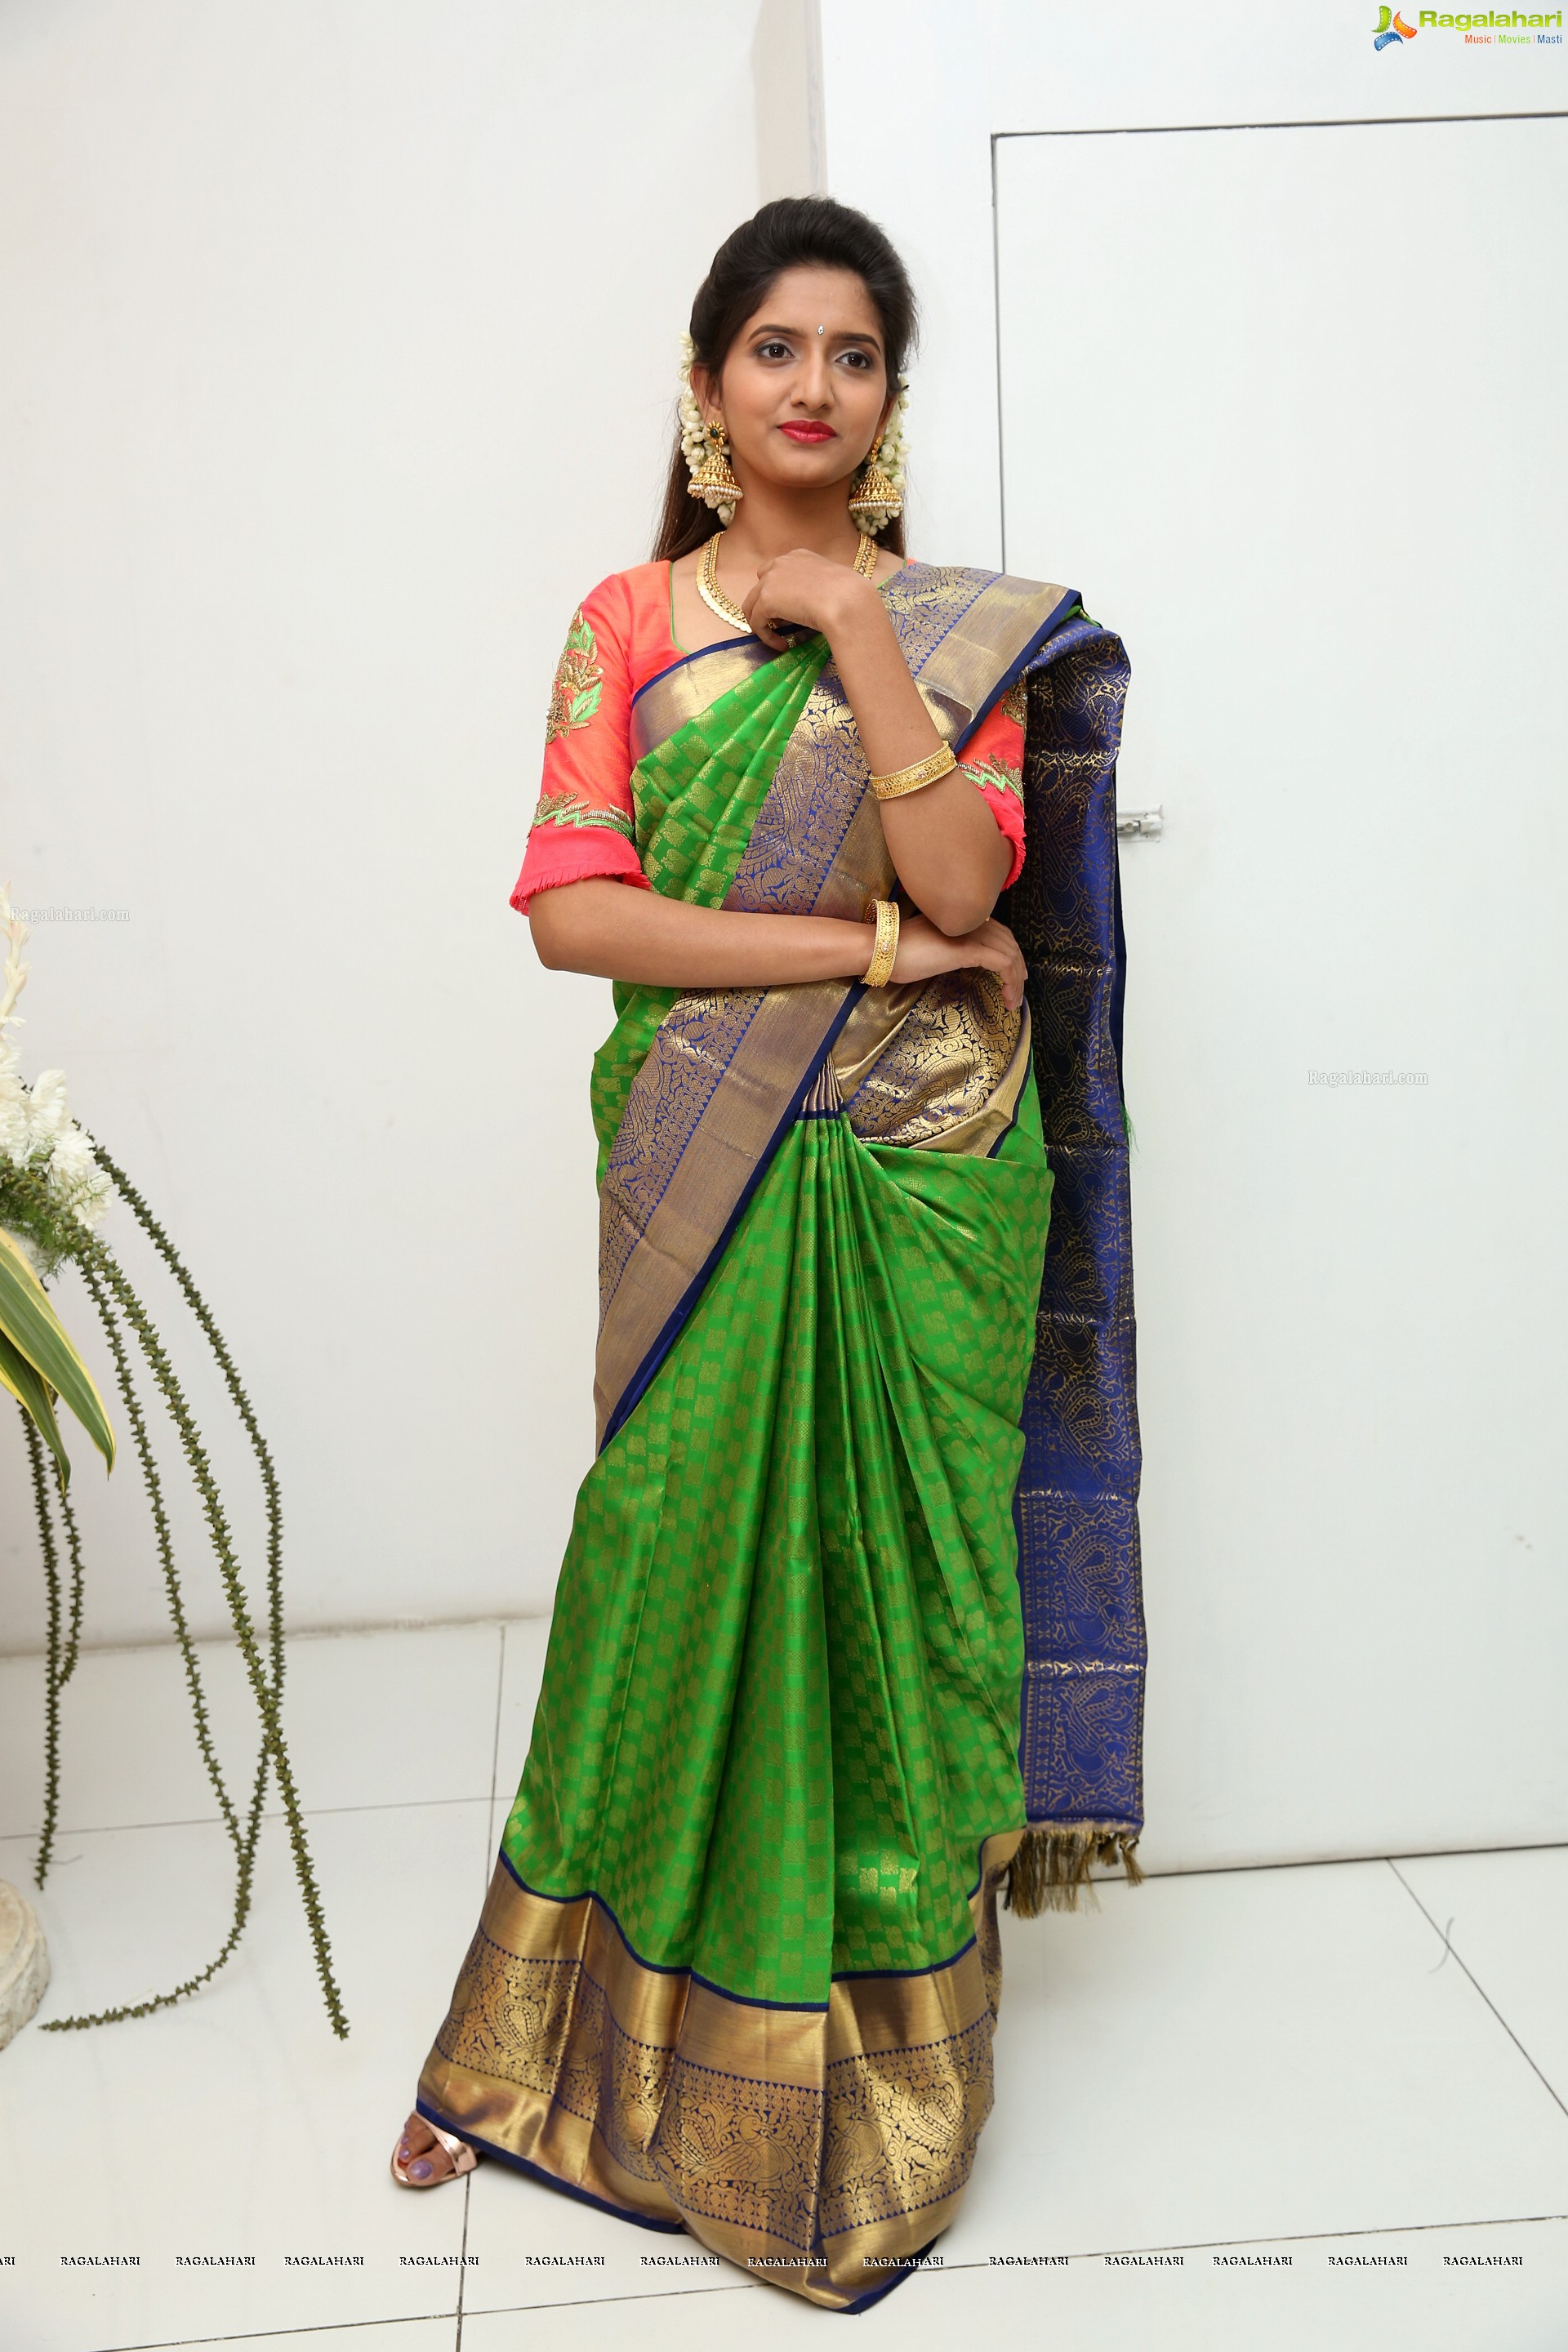 Priya Murthy at Trisha Boutique (High Definition)